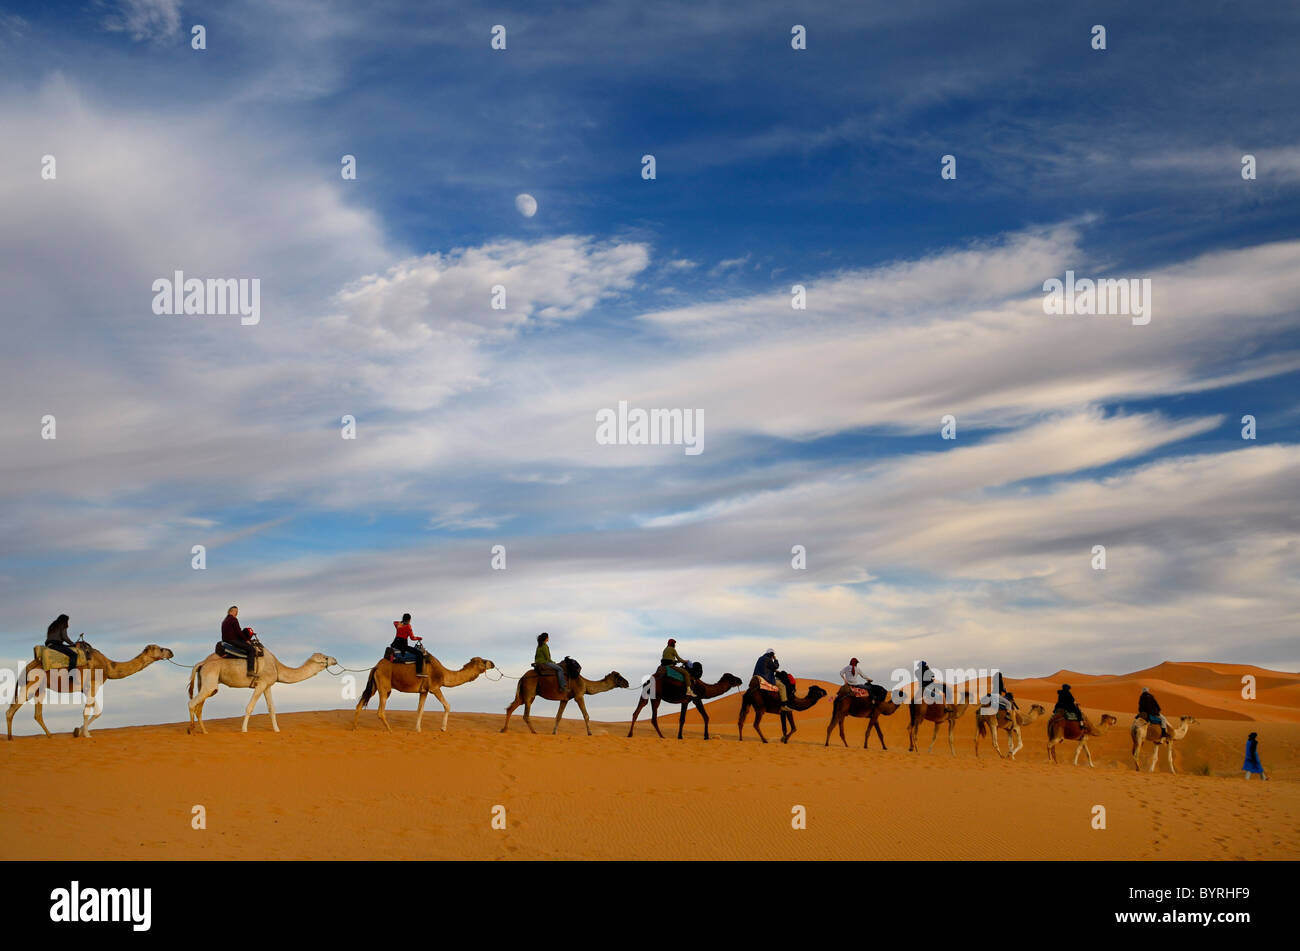 Il tuareg blu uomo berbero leader di un gruppo di piloti di cammelli in una linea per la Erg Chebbi deserto in Marocco con la luna e le nuvole Foto Stock